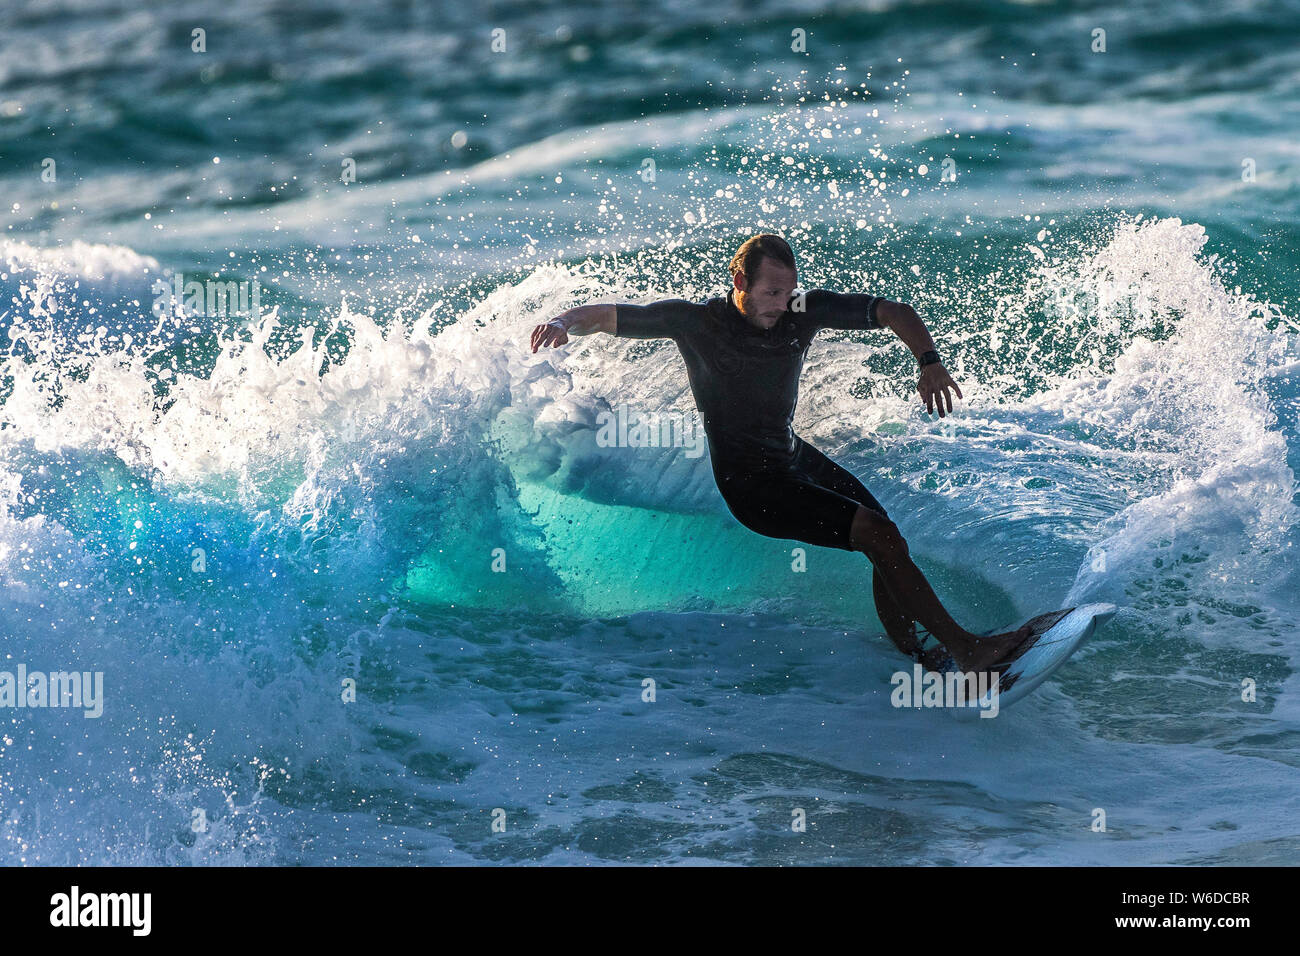 Spettacolare azione di surf a Fistral a Newquay in Cornovaglia. Foto Stock